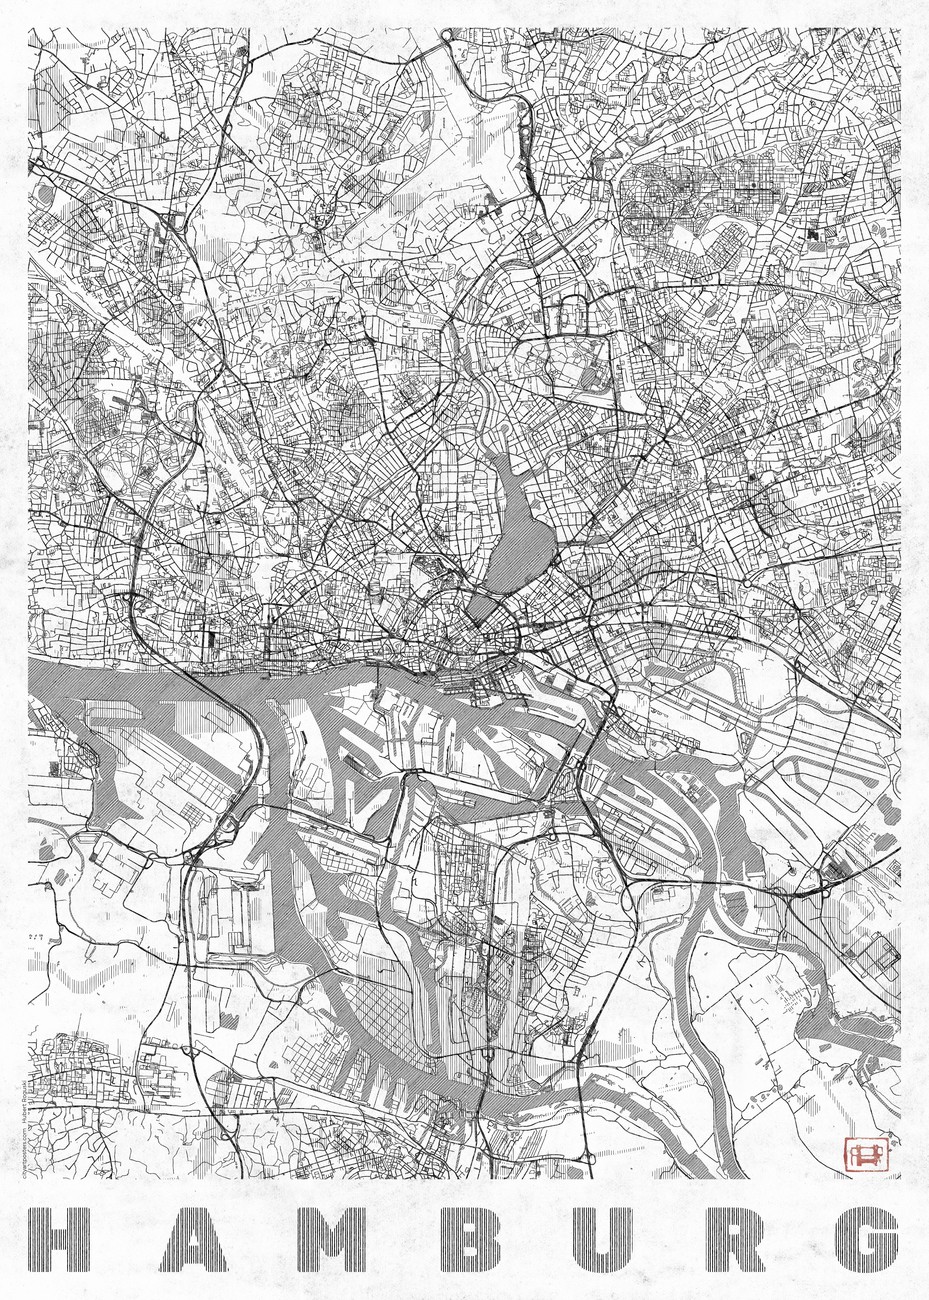 Mapa Hamburg